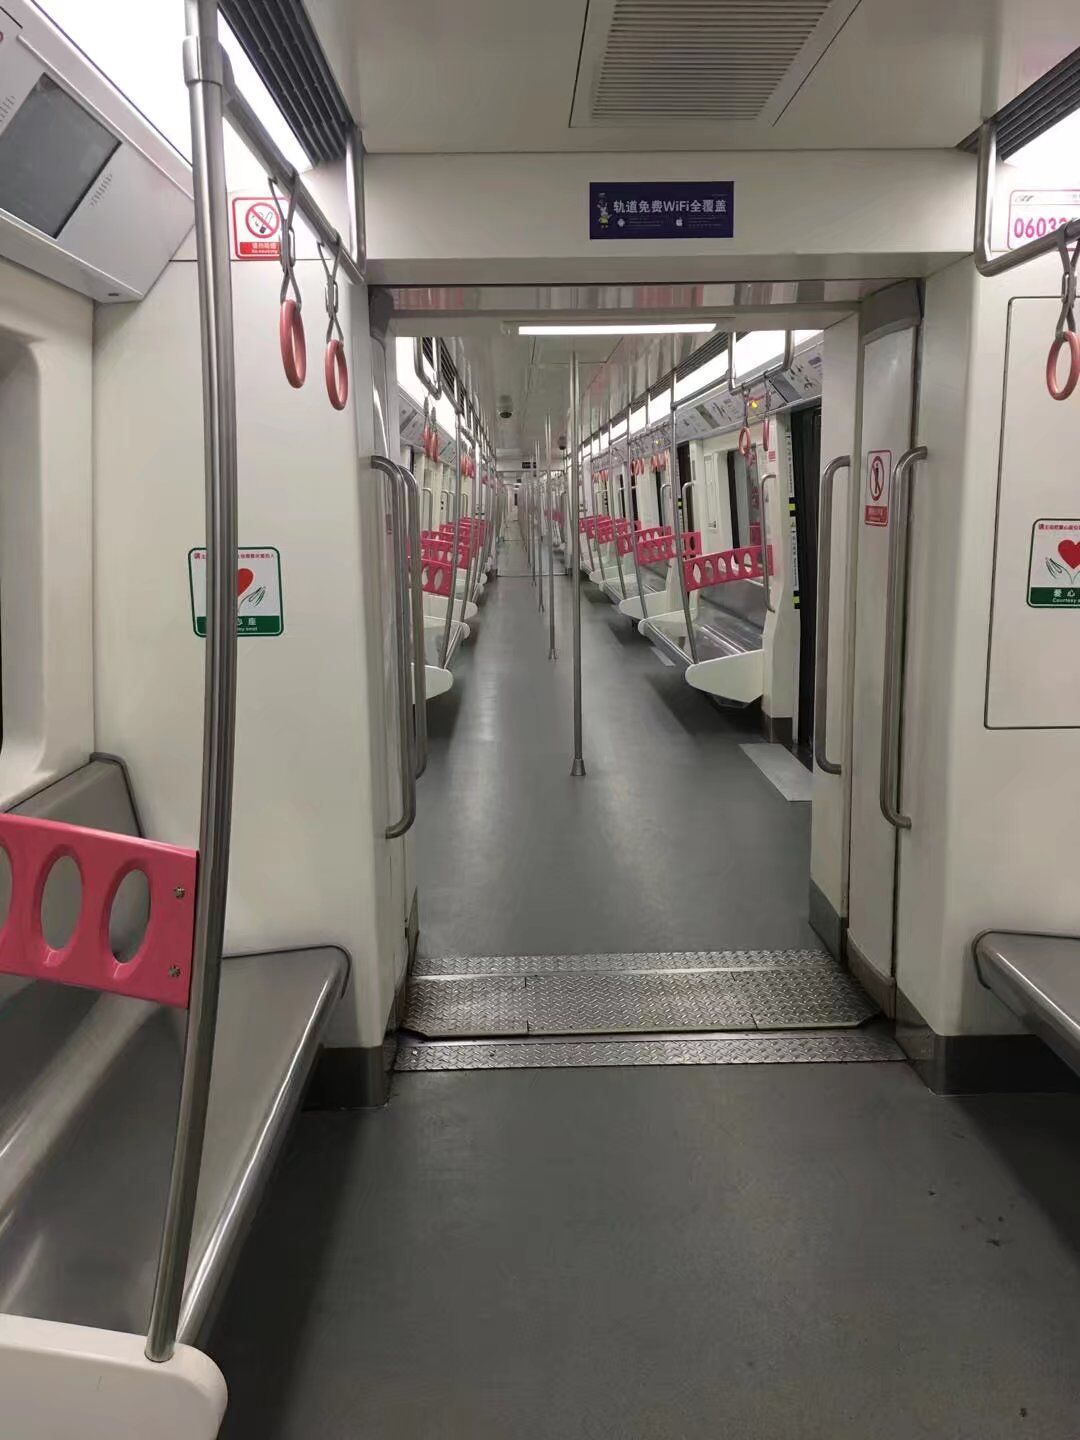 深圳地铁20号线一期计划2021年年底开通初期运营 深圳地铁20号线一期线路多长